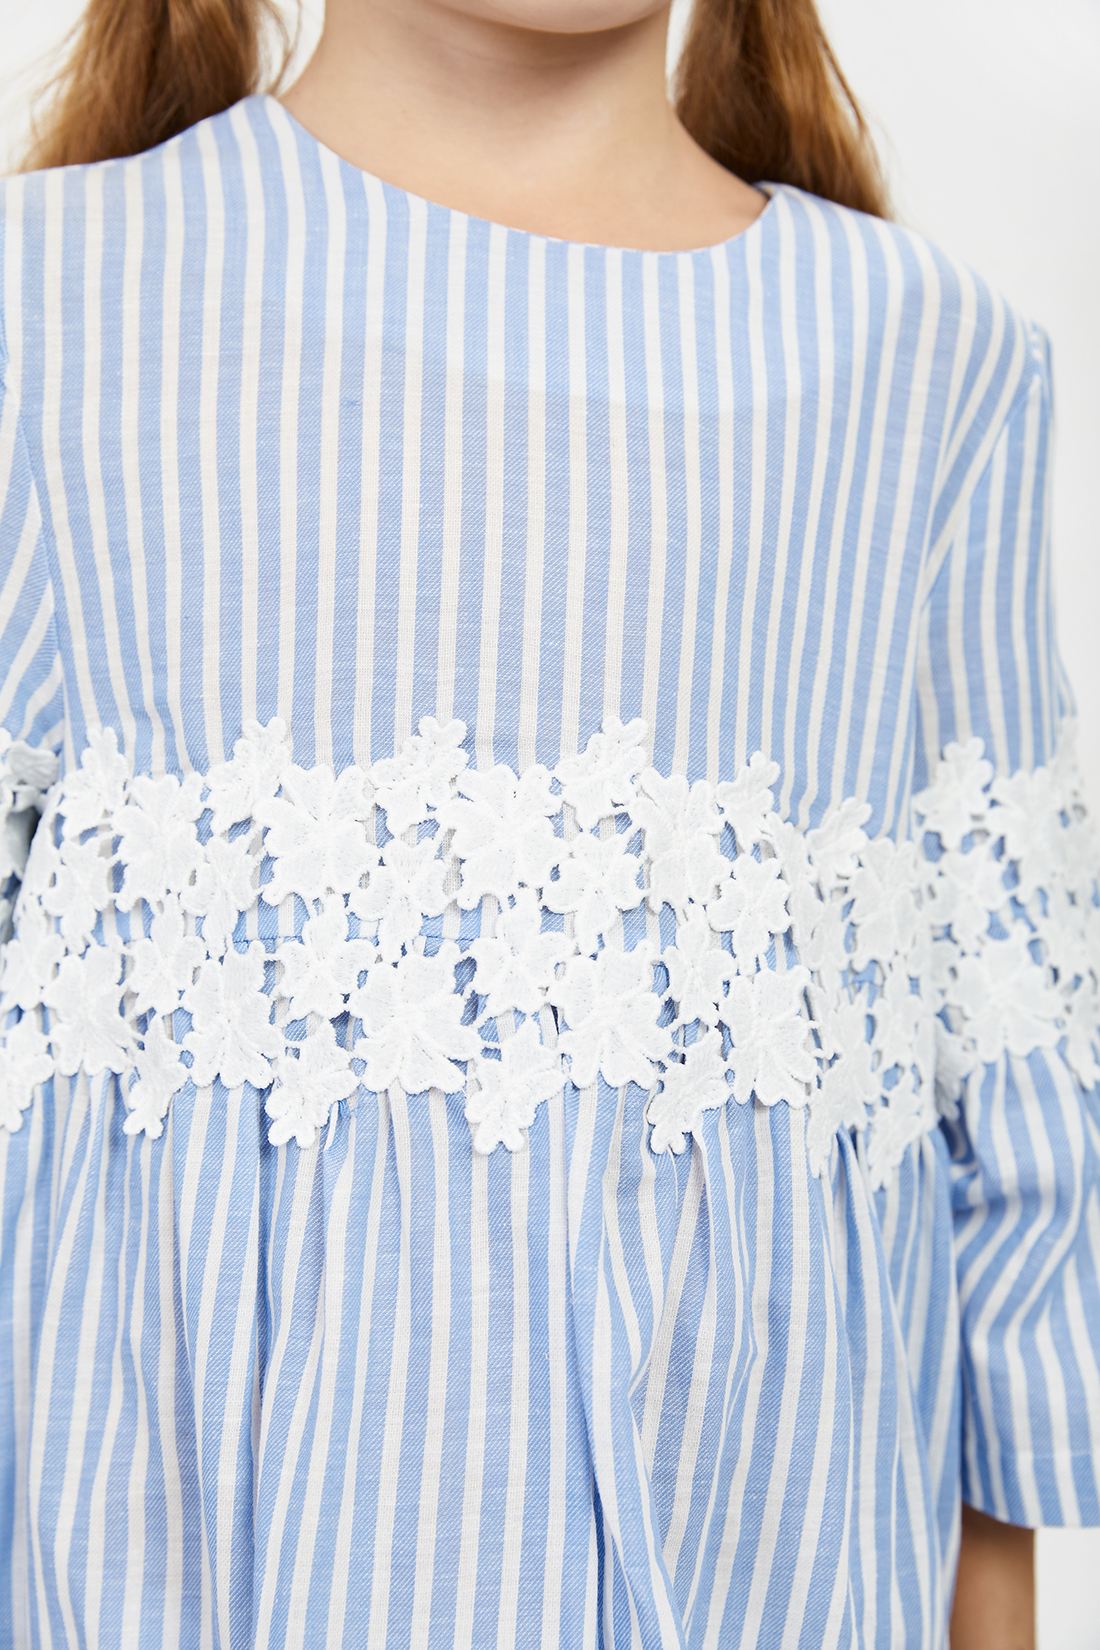 Платье (арт. baon BK451001), размер 152-158, цвет синий Платье (арт. baon BK451001) - фото 3